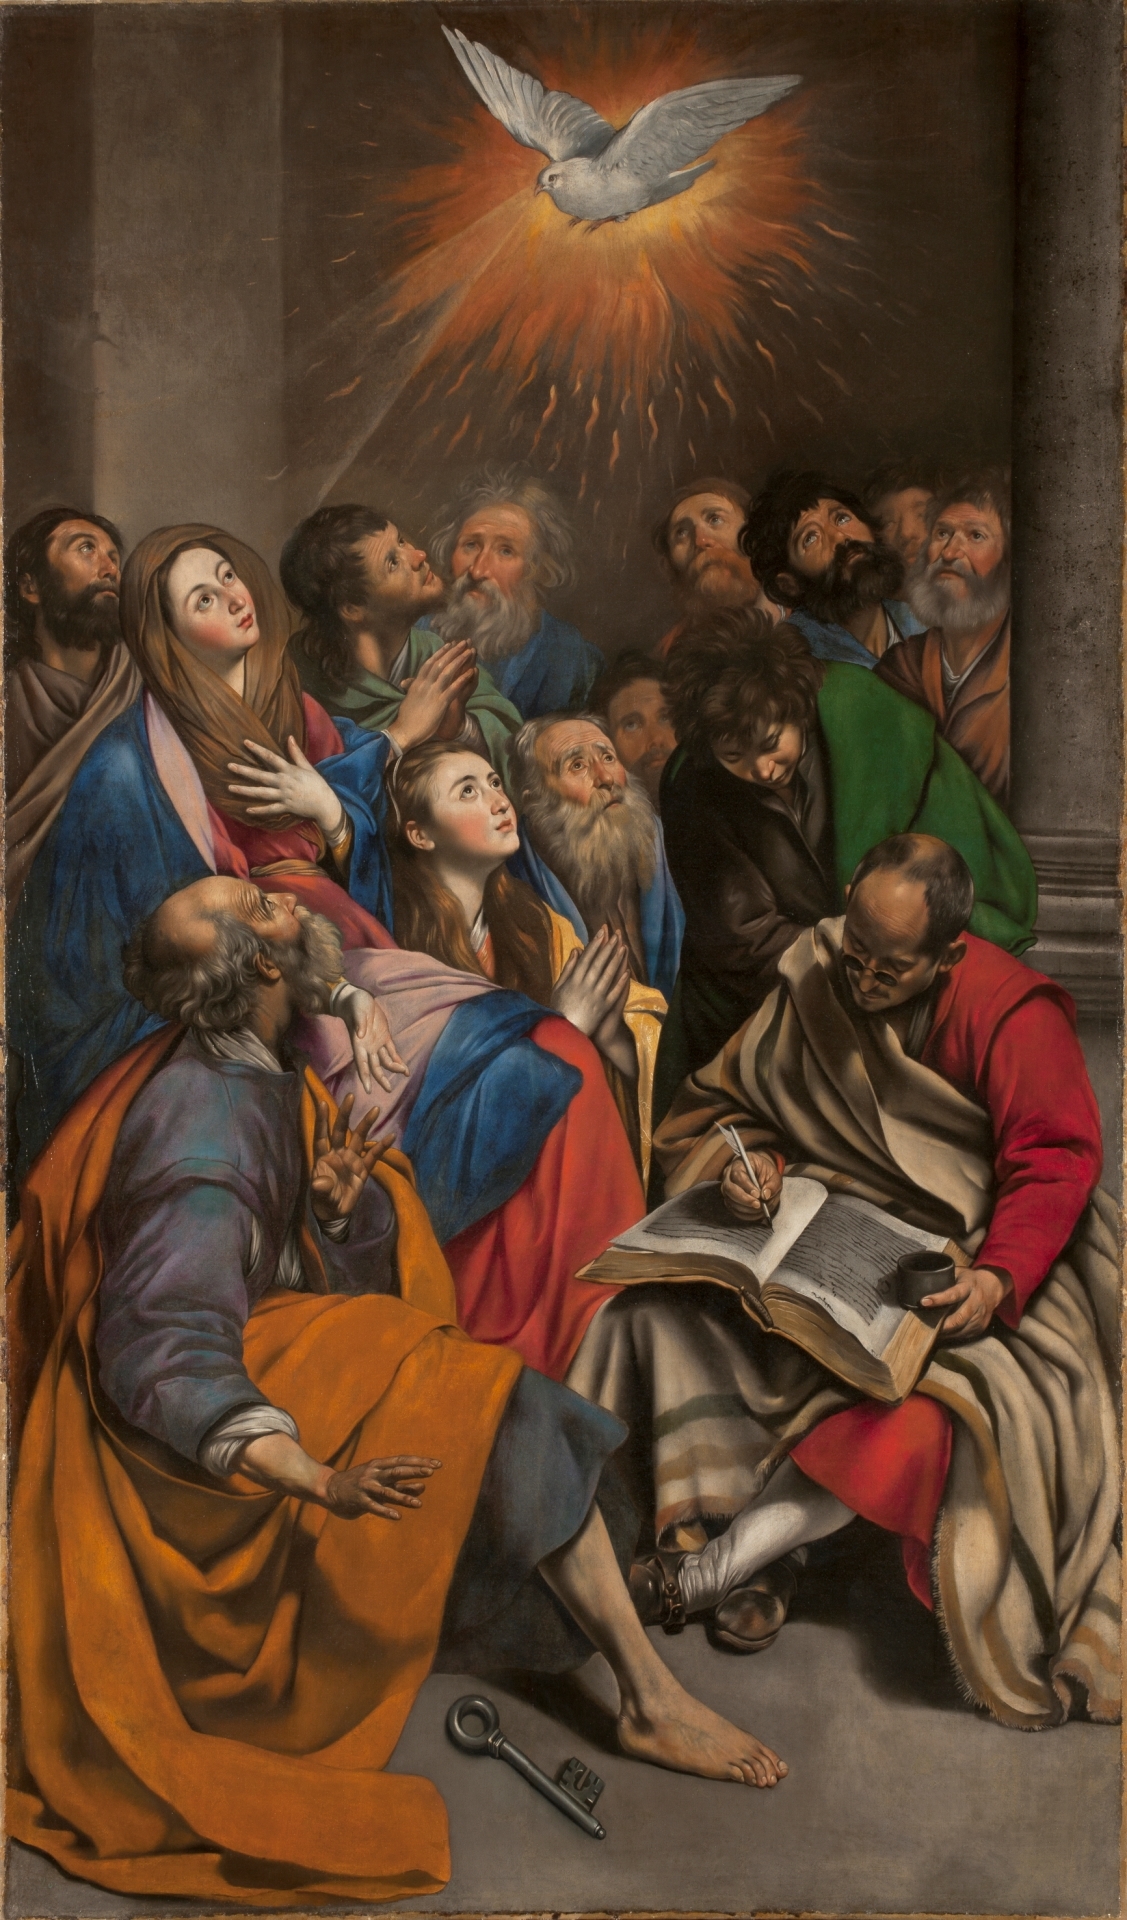 https://uploads6.wikiart.org/00296/images/juan-bautista-maino/pentecost-s.jpg